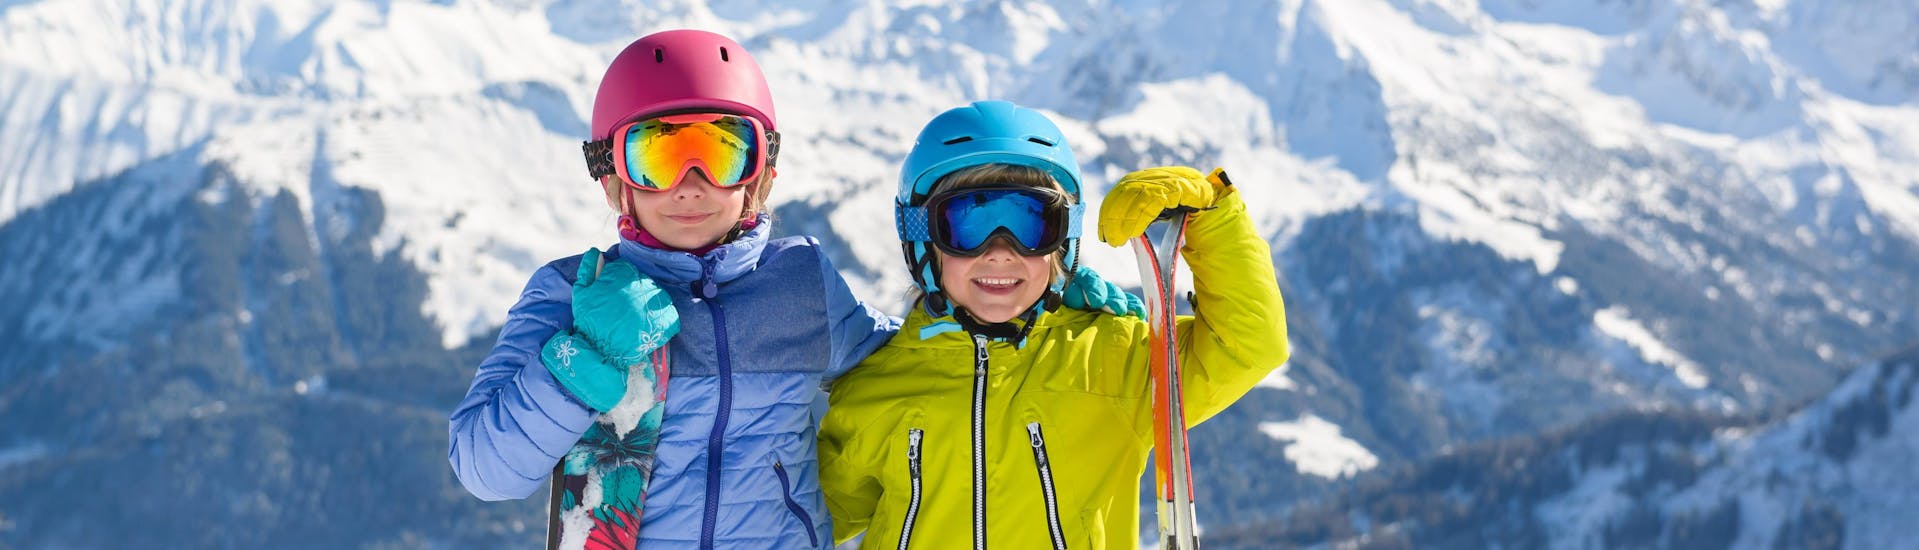 Due bambini con l'attrezzatura da sci sorridono alla fotocamera mentre si preparano per le lezioni di sci per bambini.